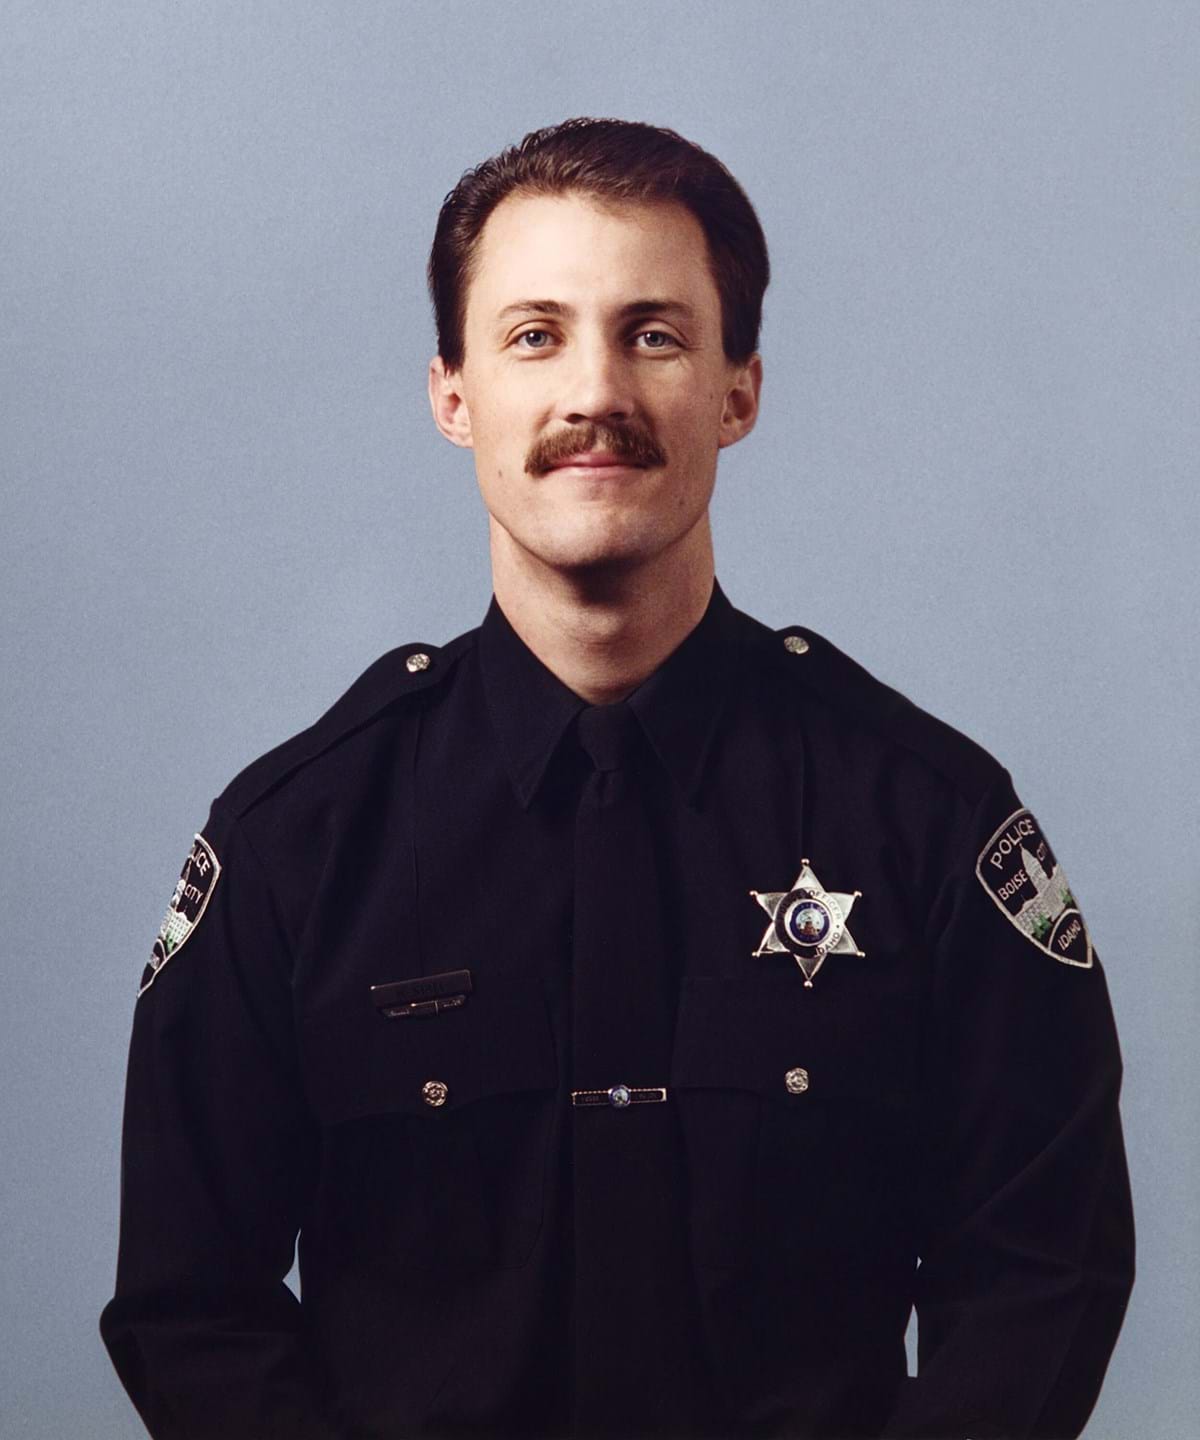 Officer Mark Stall